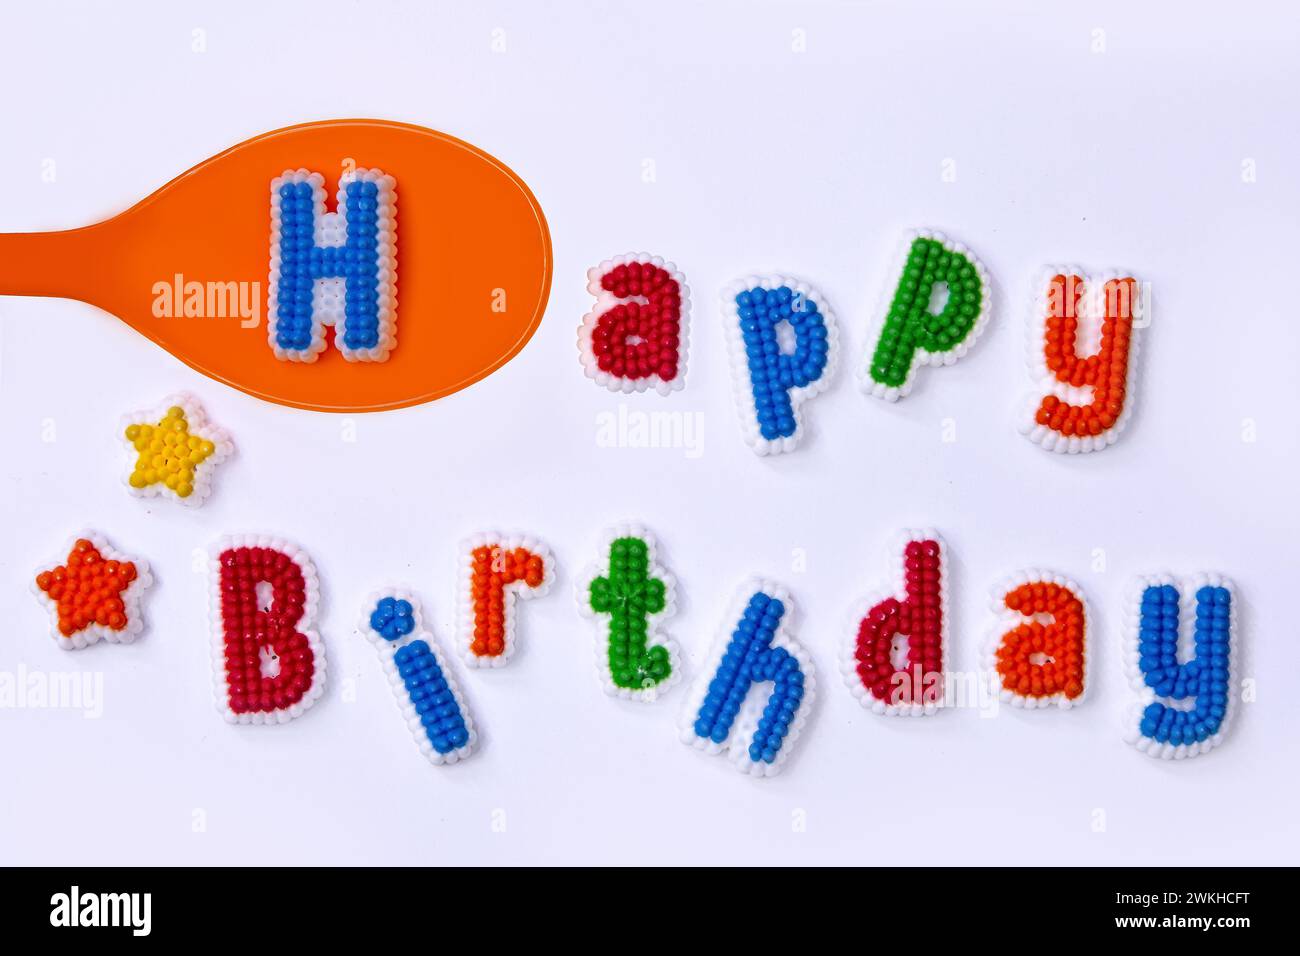 Feliz cumpleaños escrito con coloridas letras de azúcar y una cuchara de naranja Foto de stock